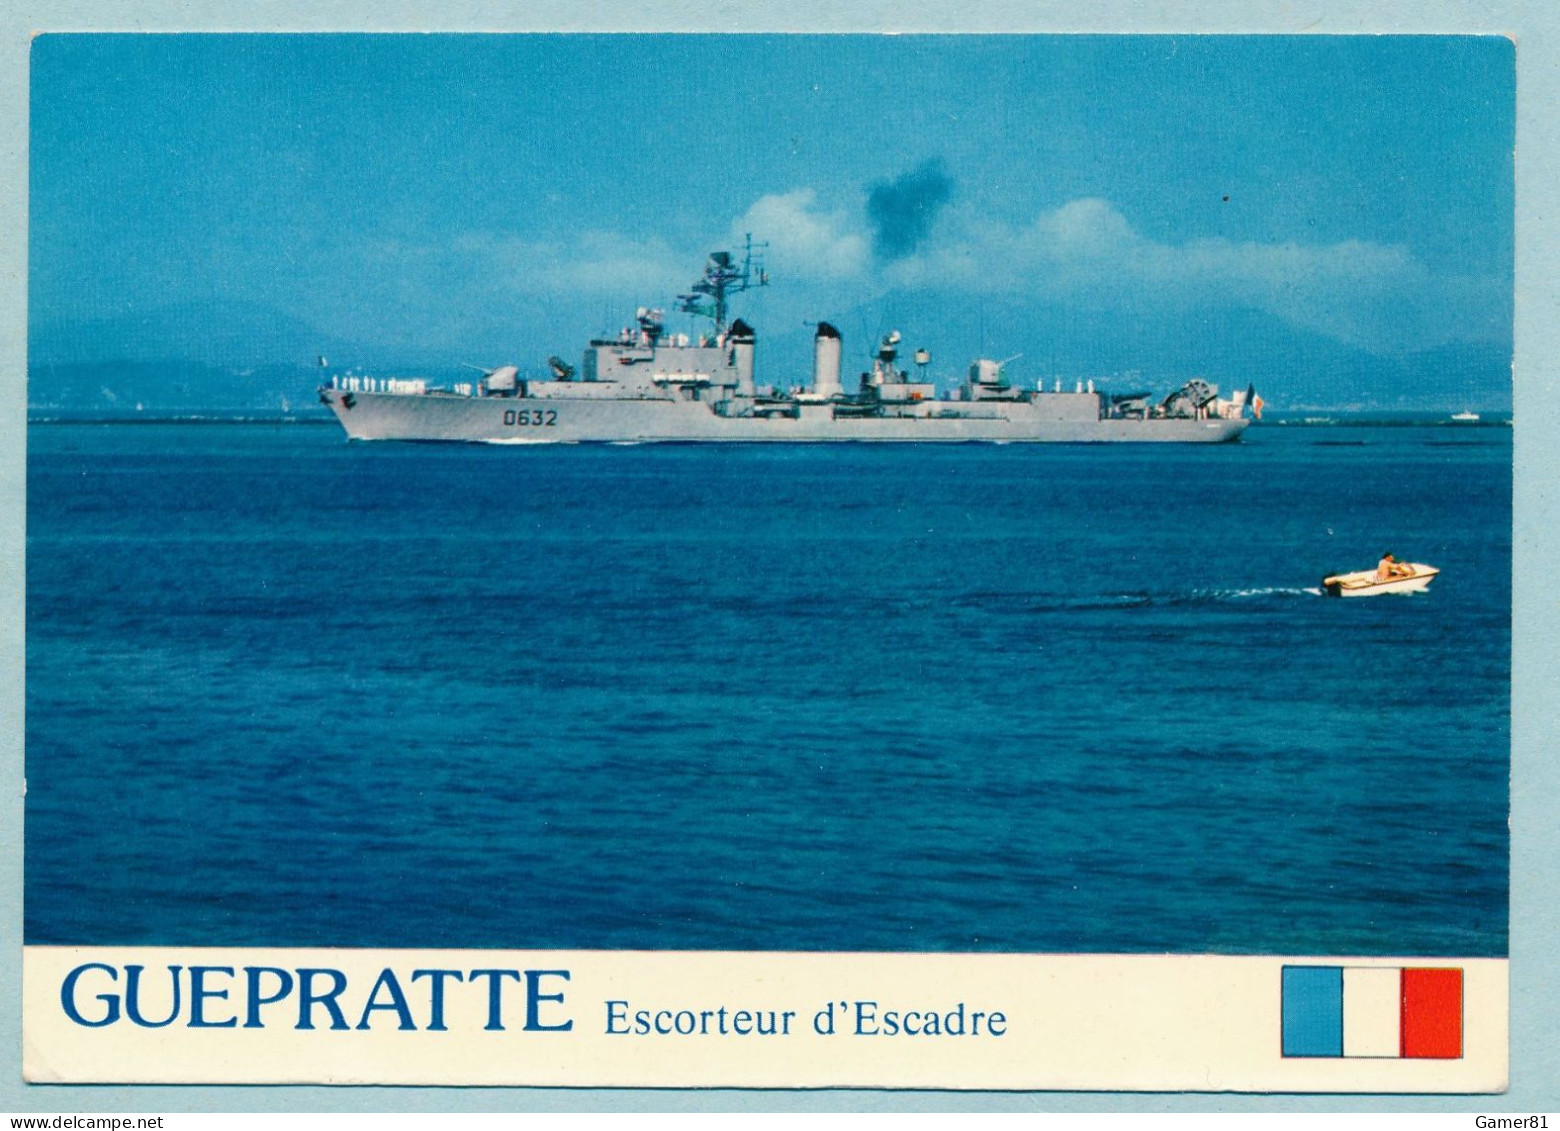 GUEPRATTE Escorteur D'Escadre 2750 Tonnes à TOULON Revue Navale 11/07/1976 Avec Le Pdt Valéry Giscard D'Estaing - Guerre